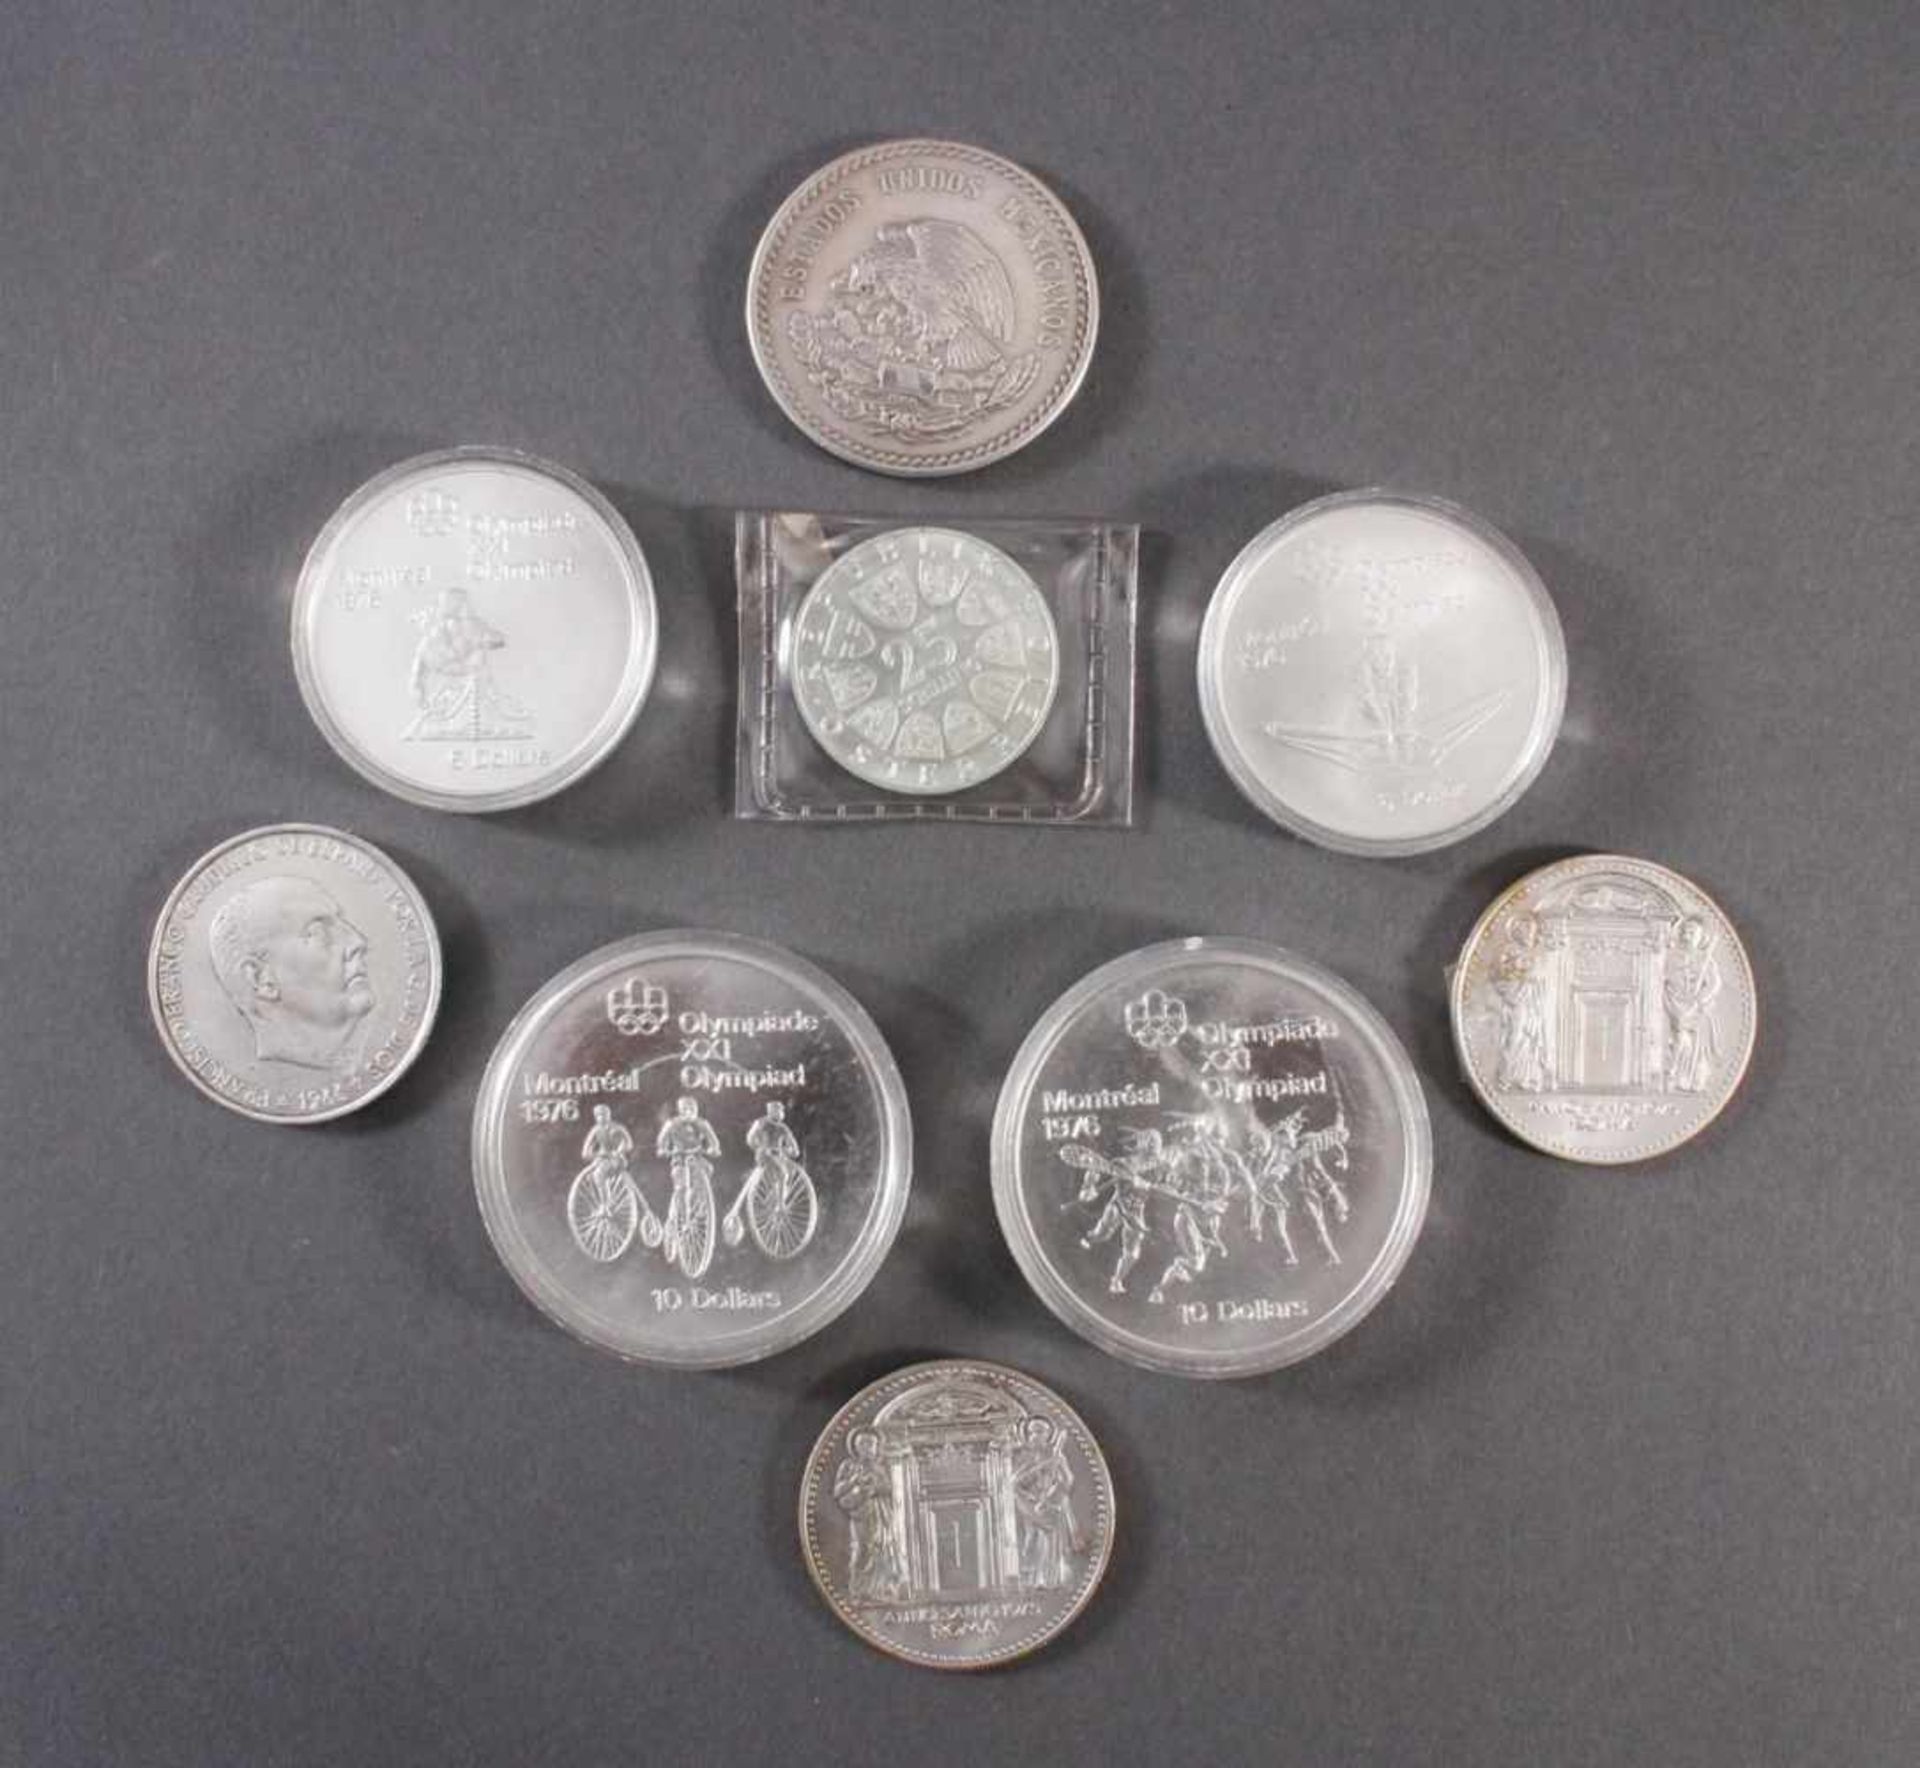 Sammlung Silbermünzen2x 10 Dollar Montreal 1976 PP in Münzkapseln. 2x 5 Dollar Montreal 175 PP in